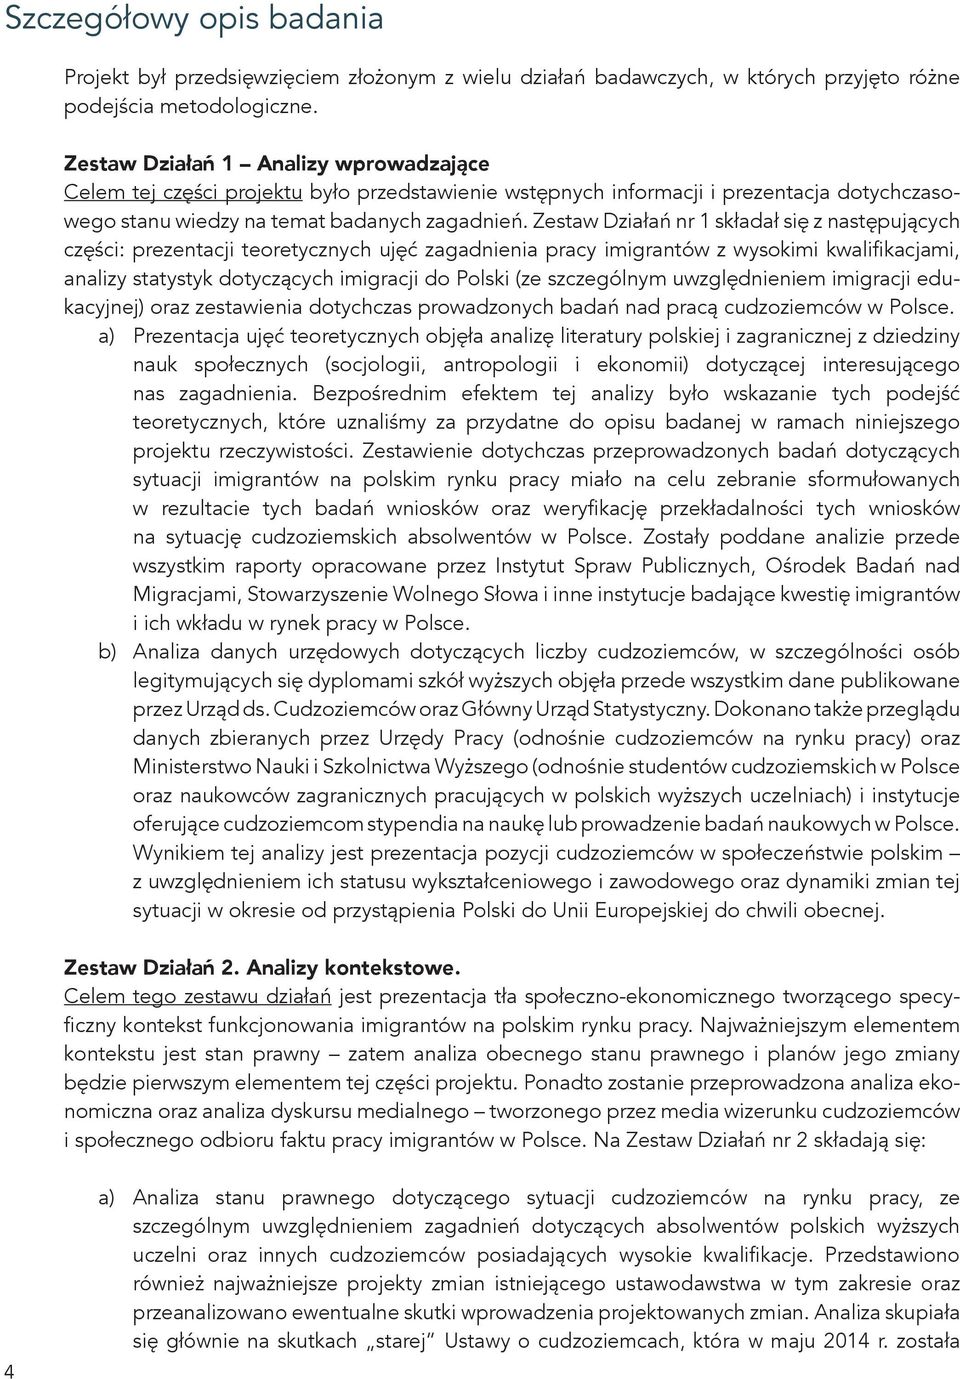 Zestaw Działań nr 1 składał się z następujących części: prezentacji teoretycznych ujęć zagadnienia pracy imigrantów z wysokimi kwalifikacjami, analizy statystyk dotyczących imigracji do Polski (ze